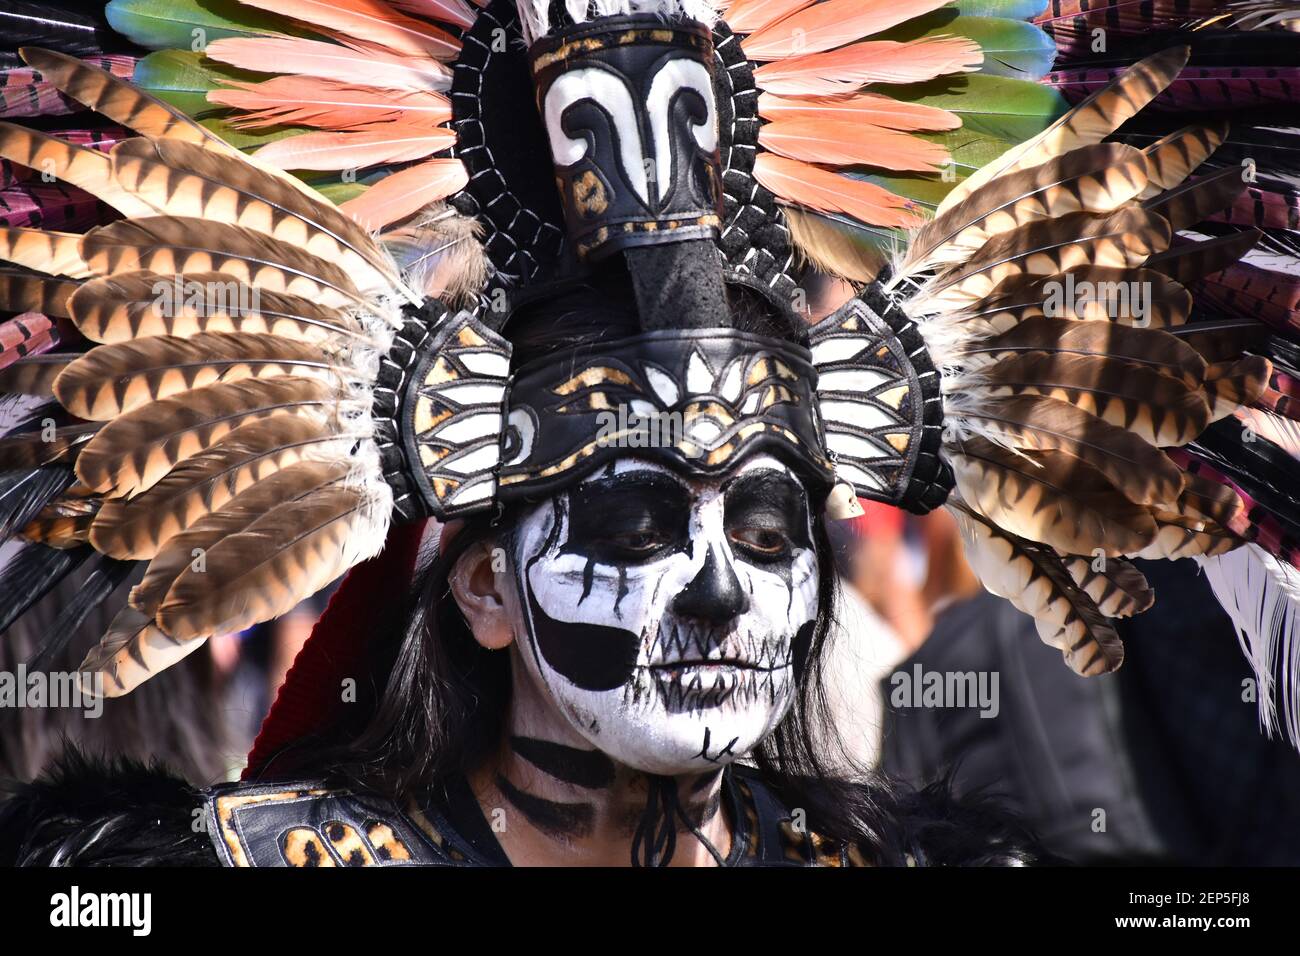 CIUDAD DE MÉXICO, MÉXICO - 1 DE NOVIEMBRE: Una niña con el vestido  prehispánico posará para hacer fotos durante la mega ofrenda como parte de  la celebración de Dia de muertos para